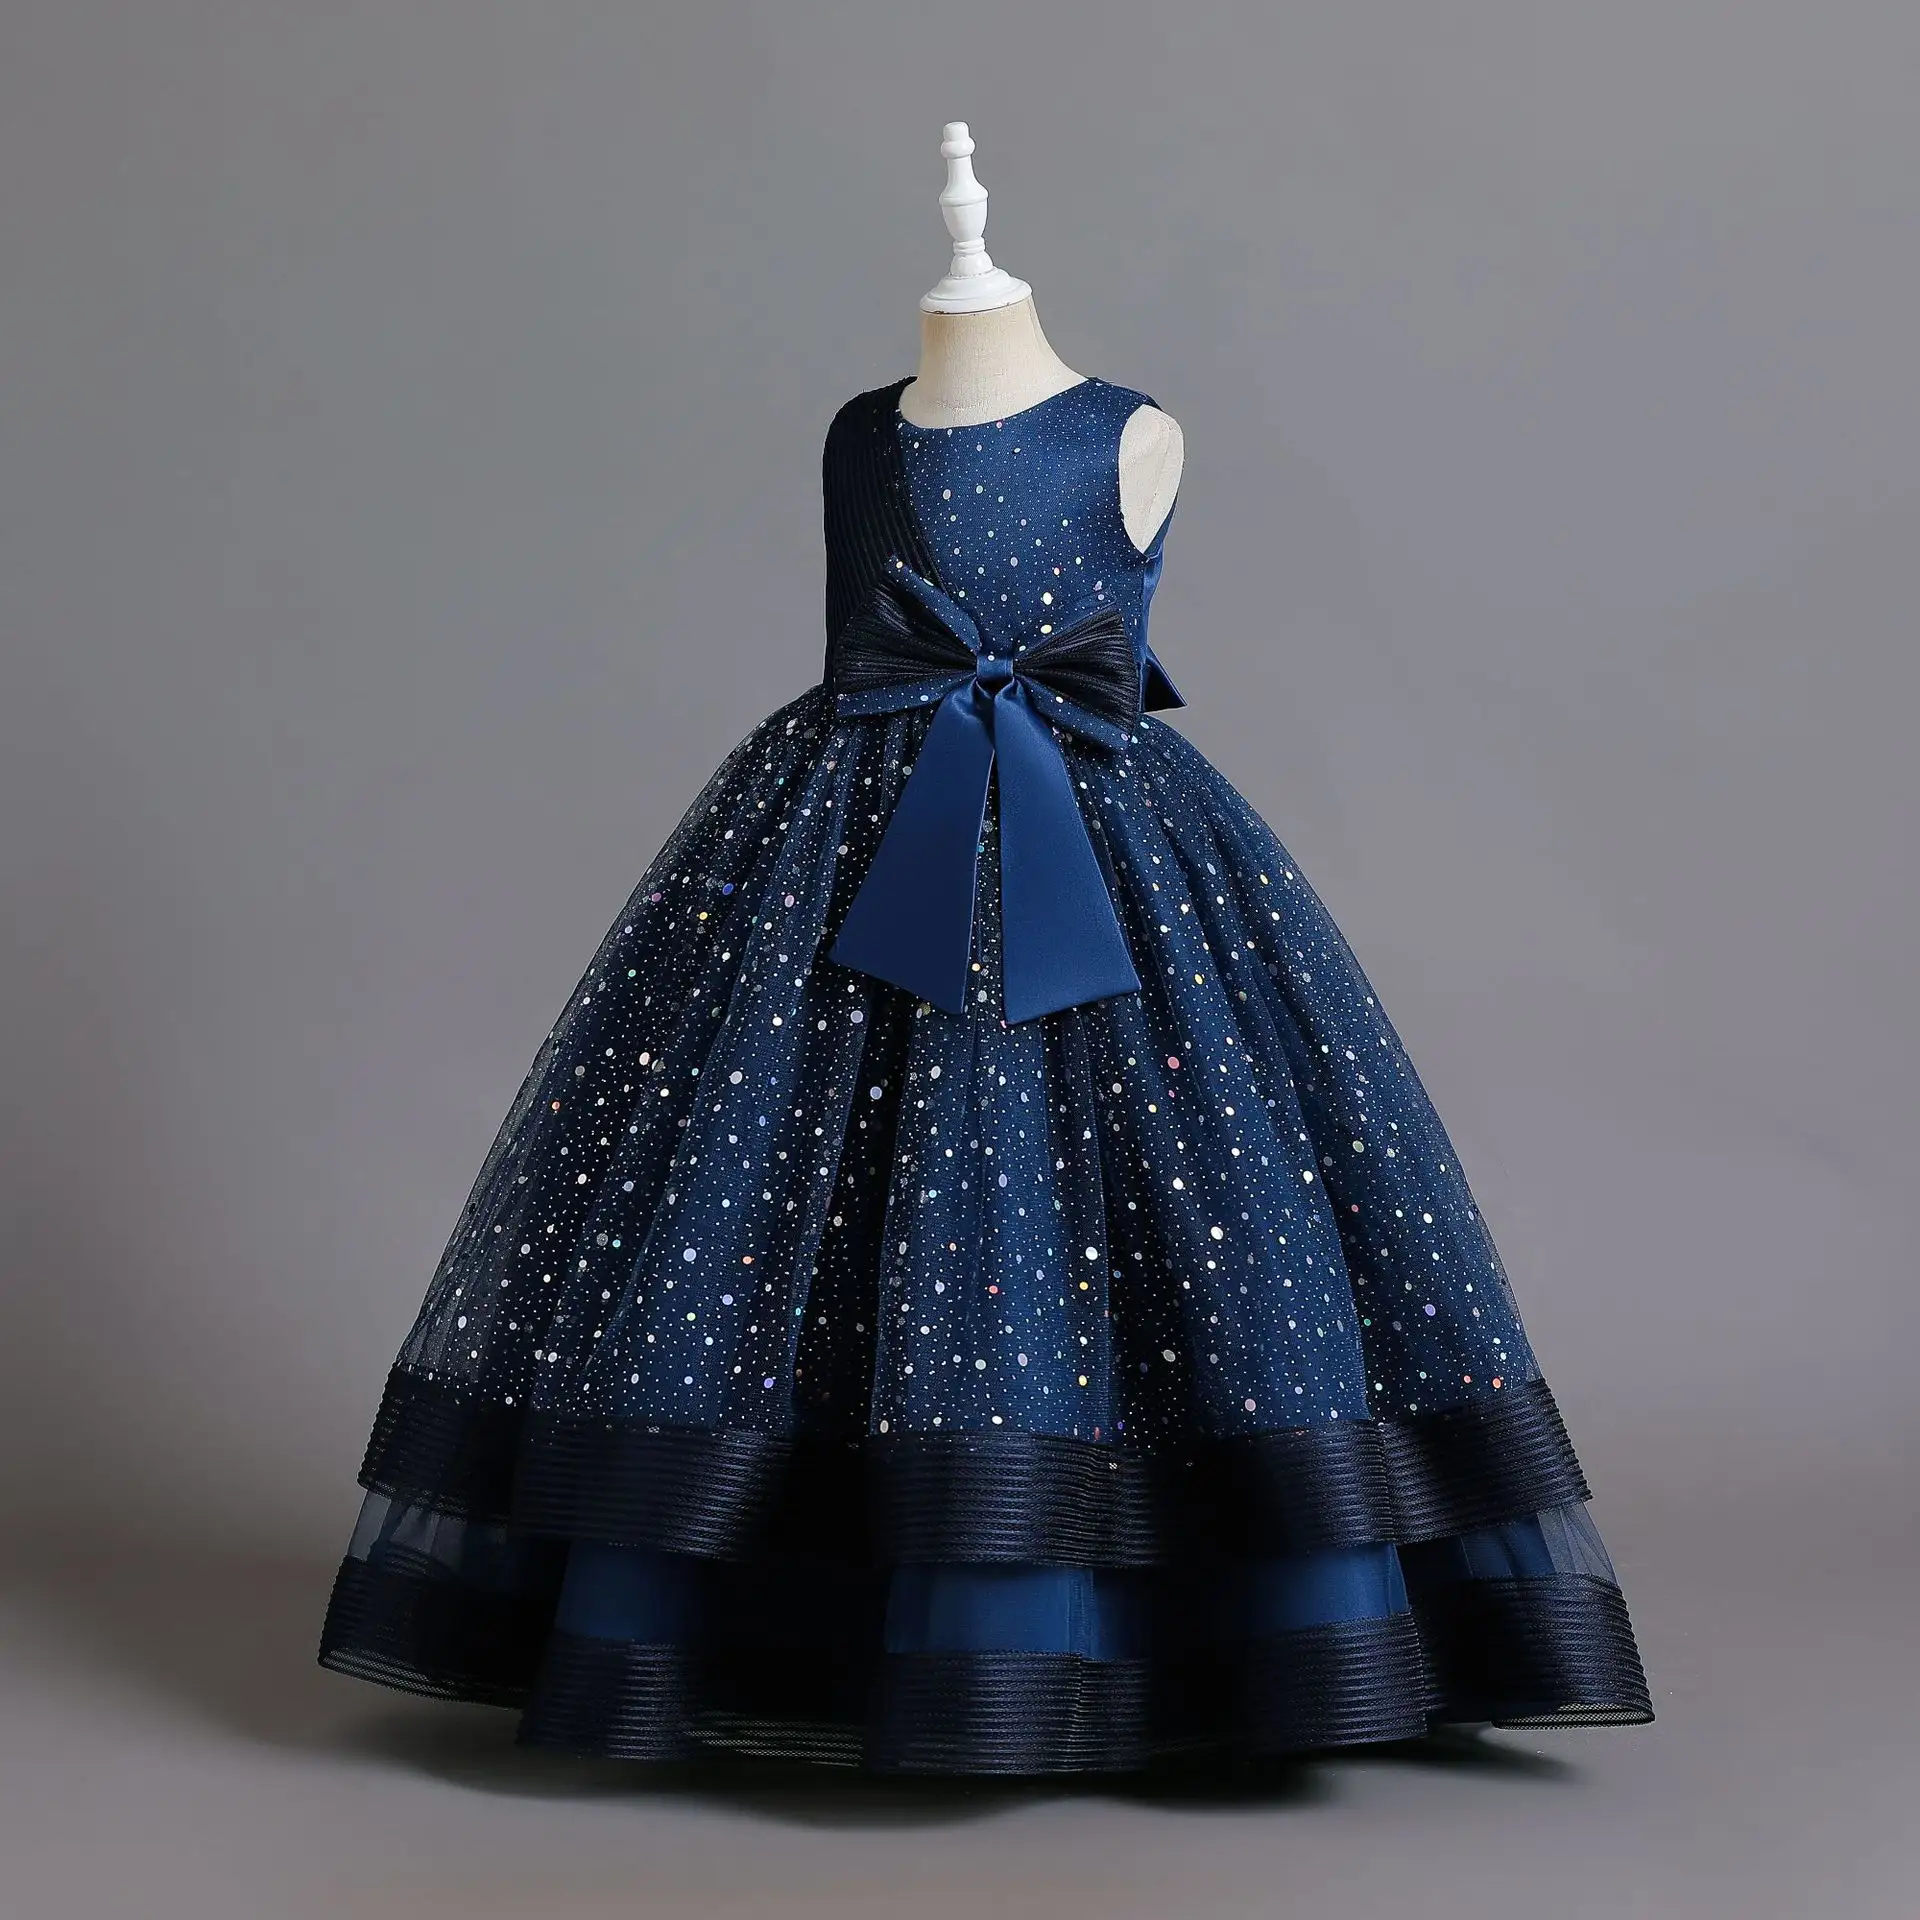 2022 belle fille nouveau Design fantaisie fleurs robe enfants vêtements modernes enfants fête porter robe